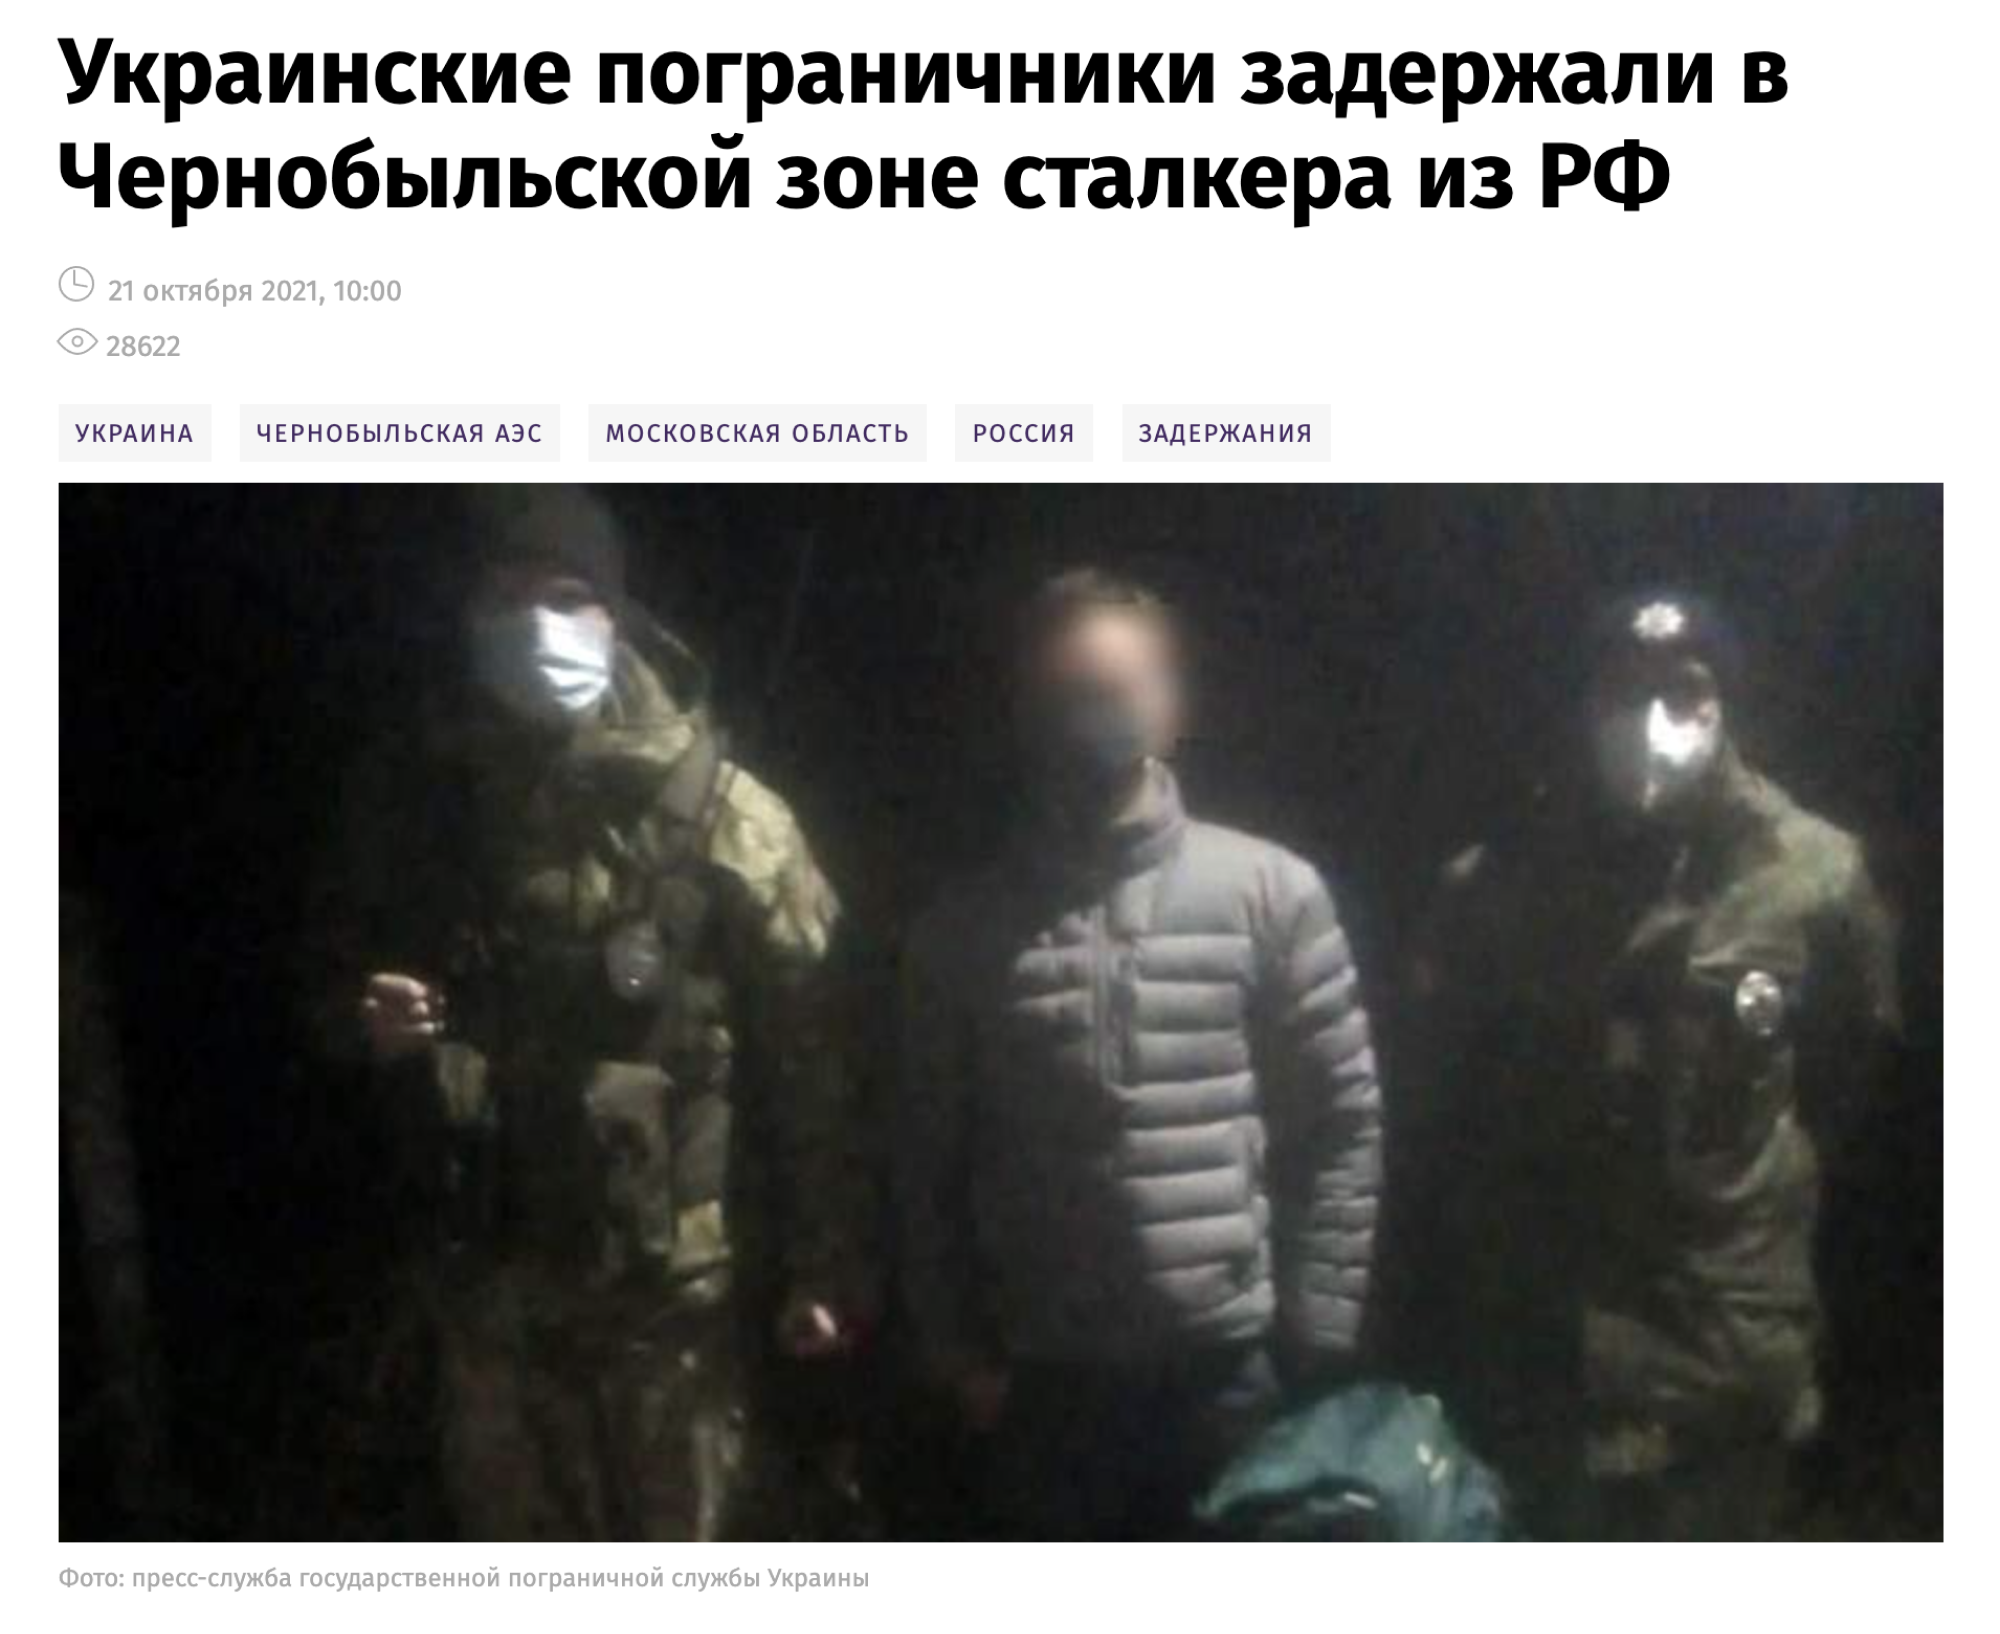 Арест моего спутника даже попал в российские новости